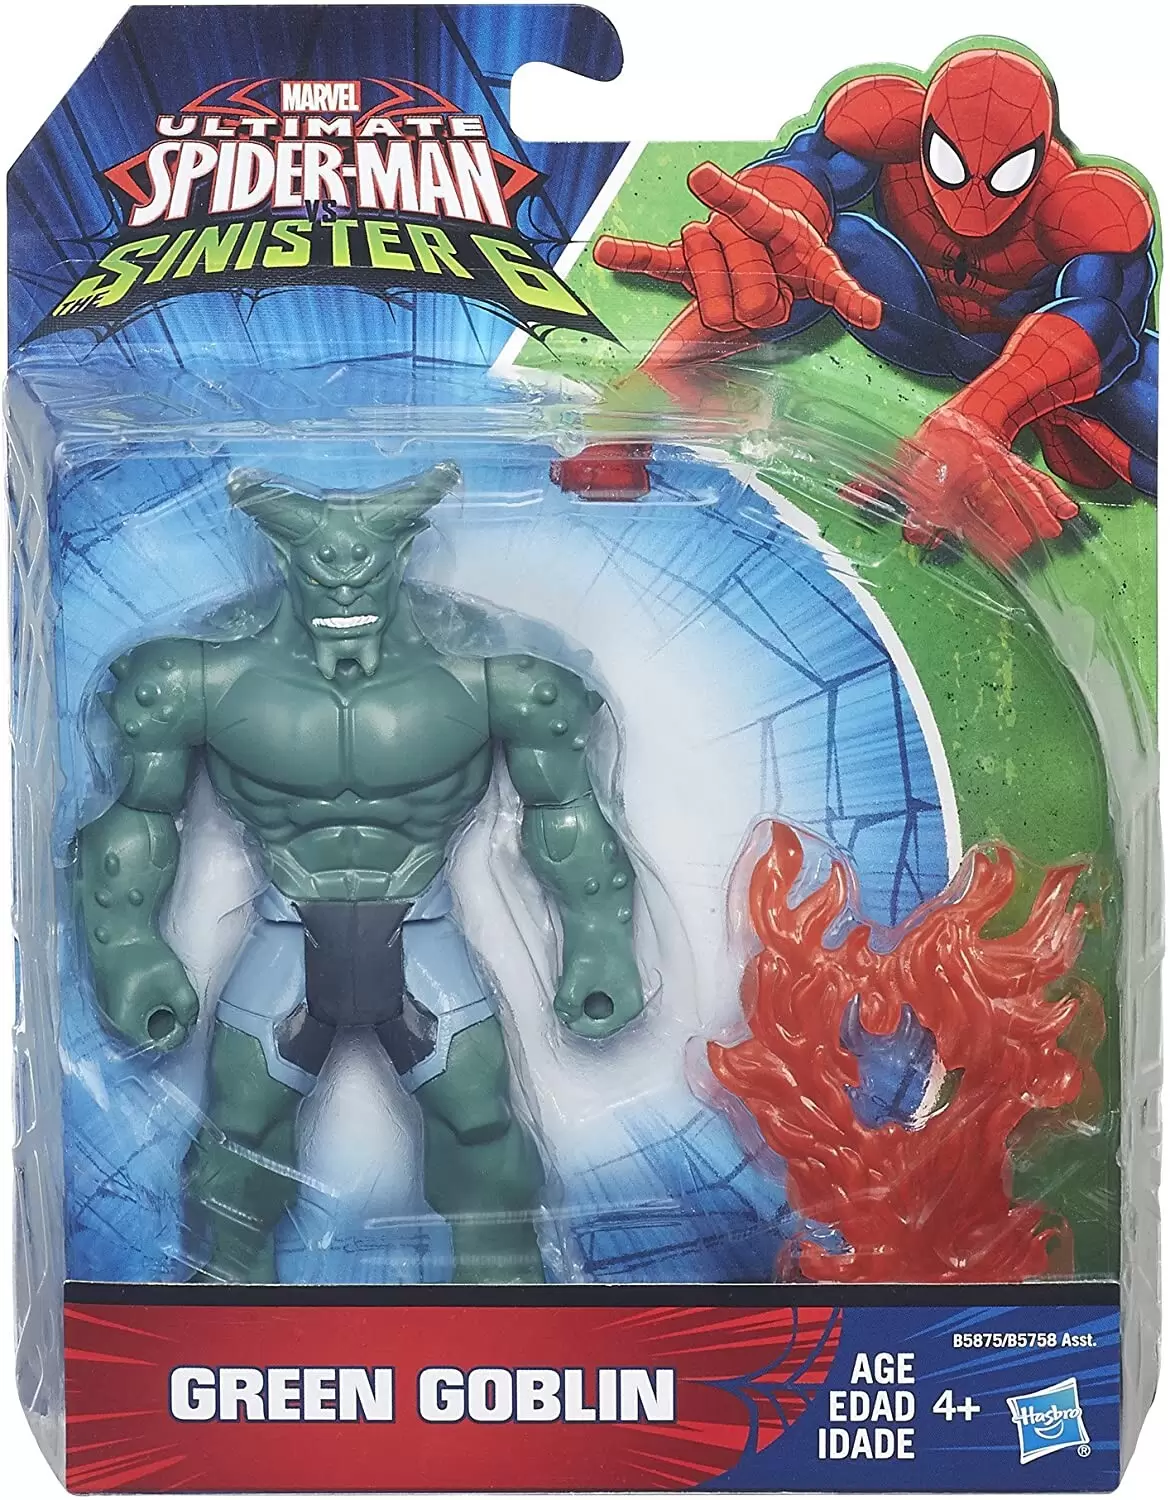 Ultimate Spider-Man Vs The Sinister 6 - Green Goblin